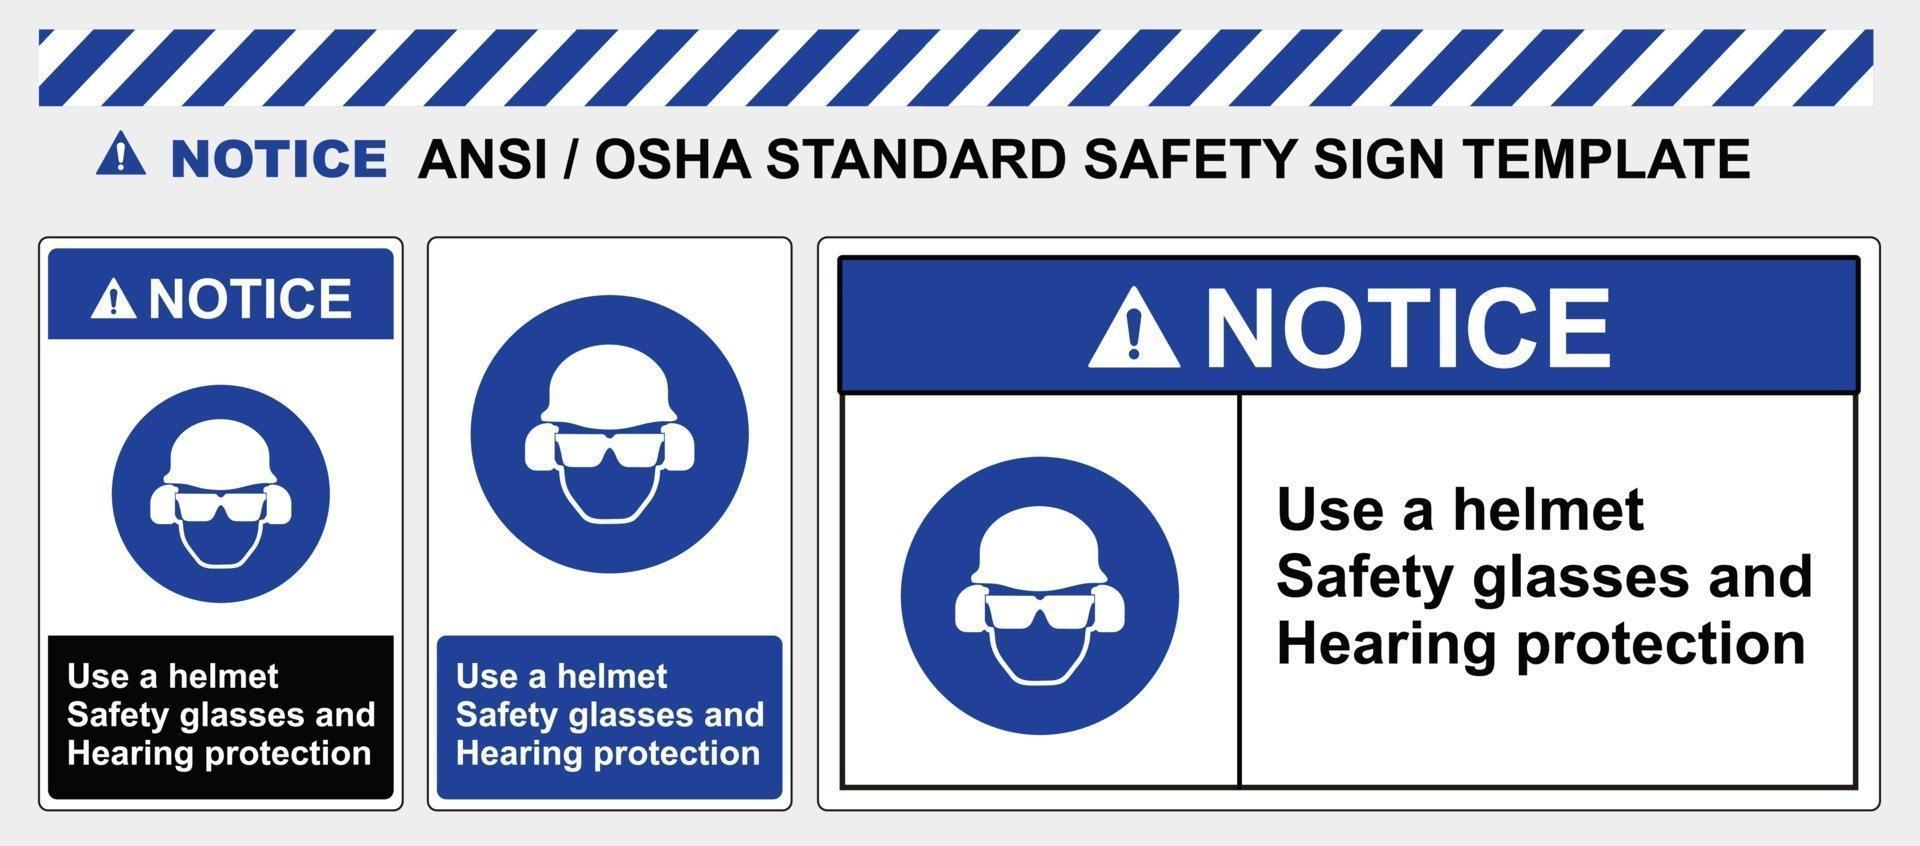 veiligheidstekensjabloon gebruik helmveiligheidsbril en gehoorbescherming, standaard ansi en osha vector